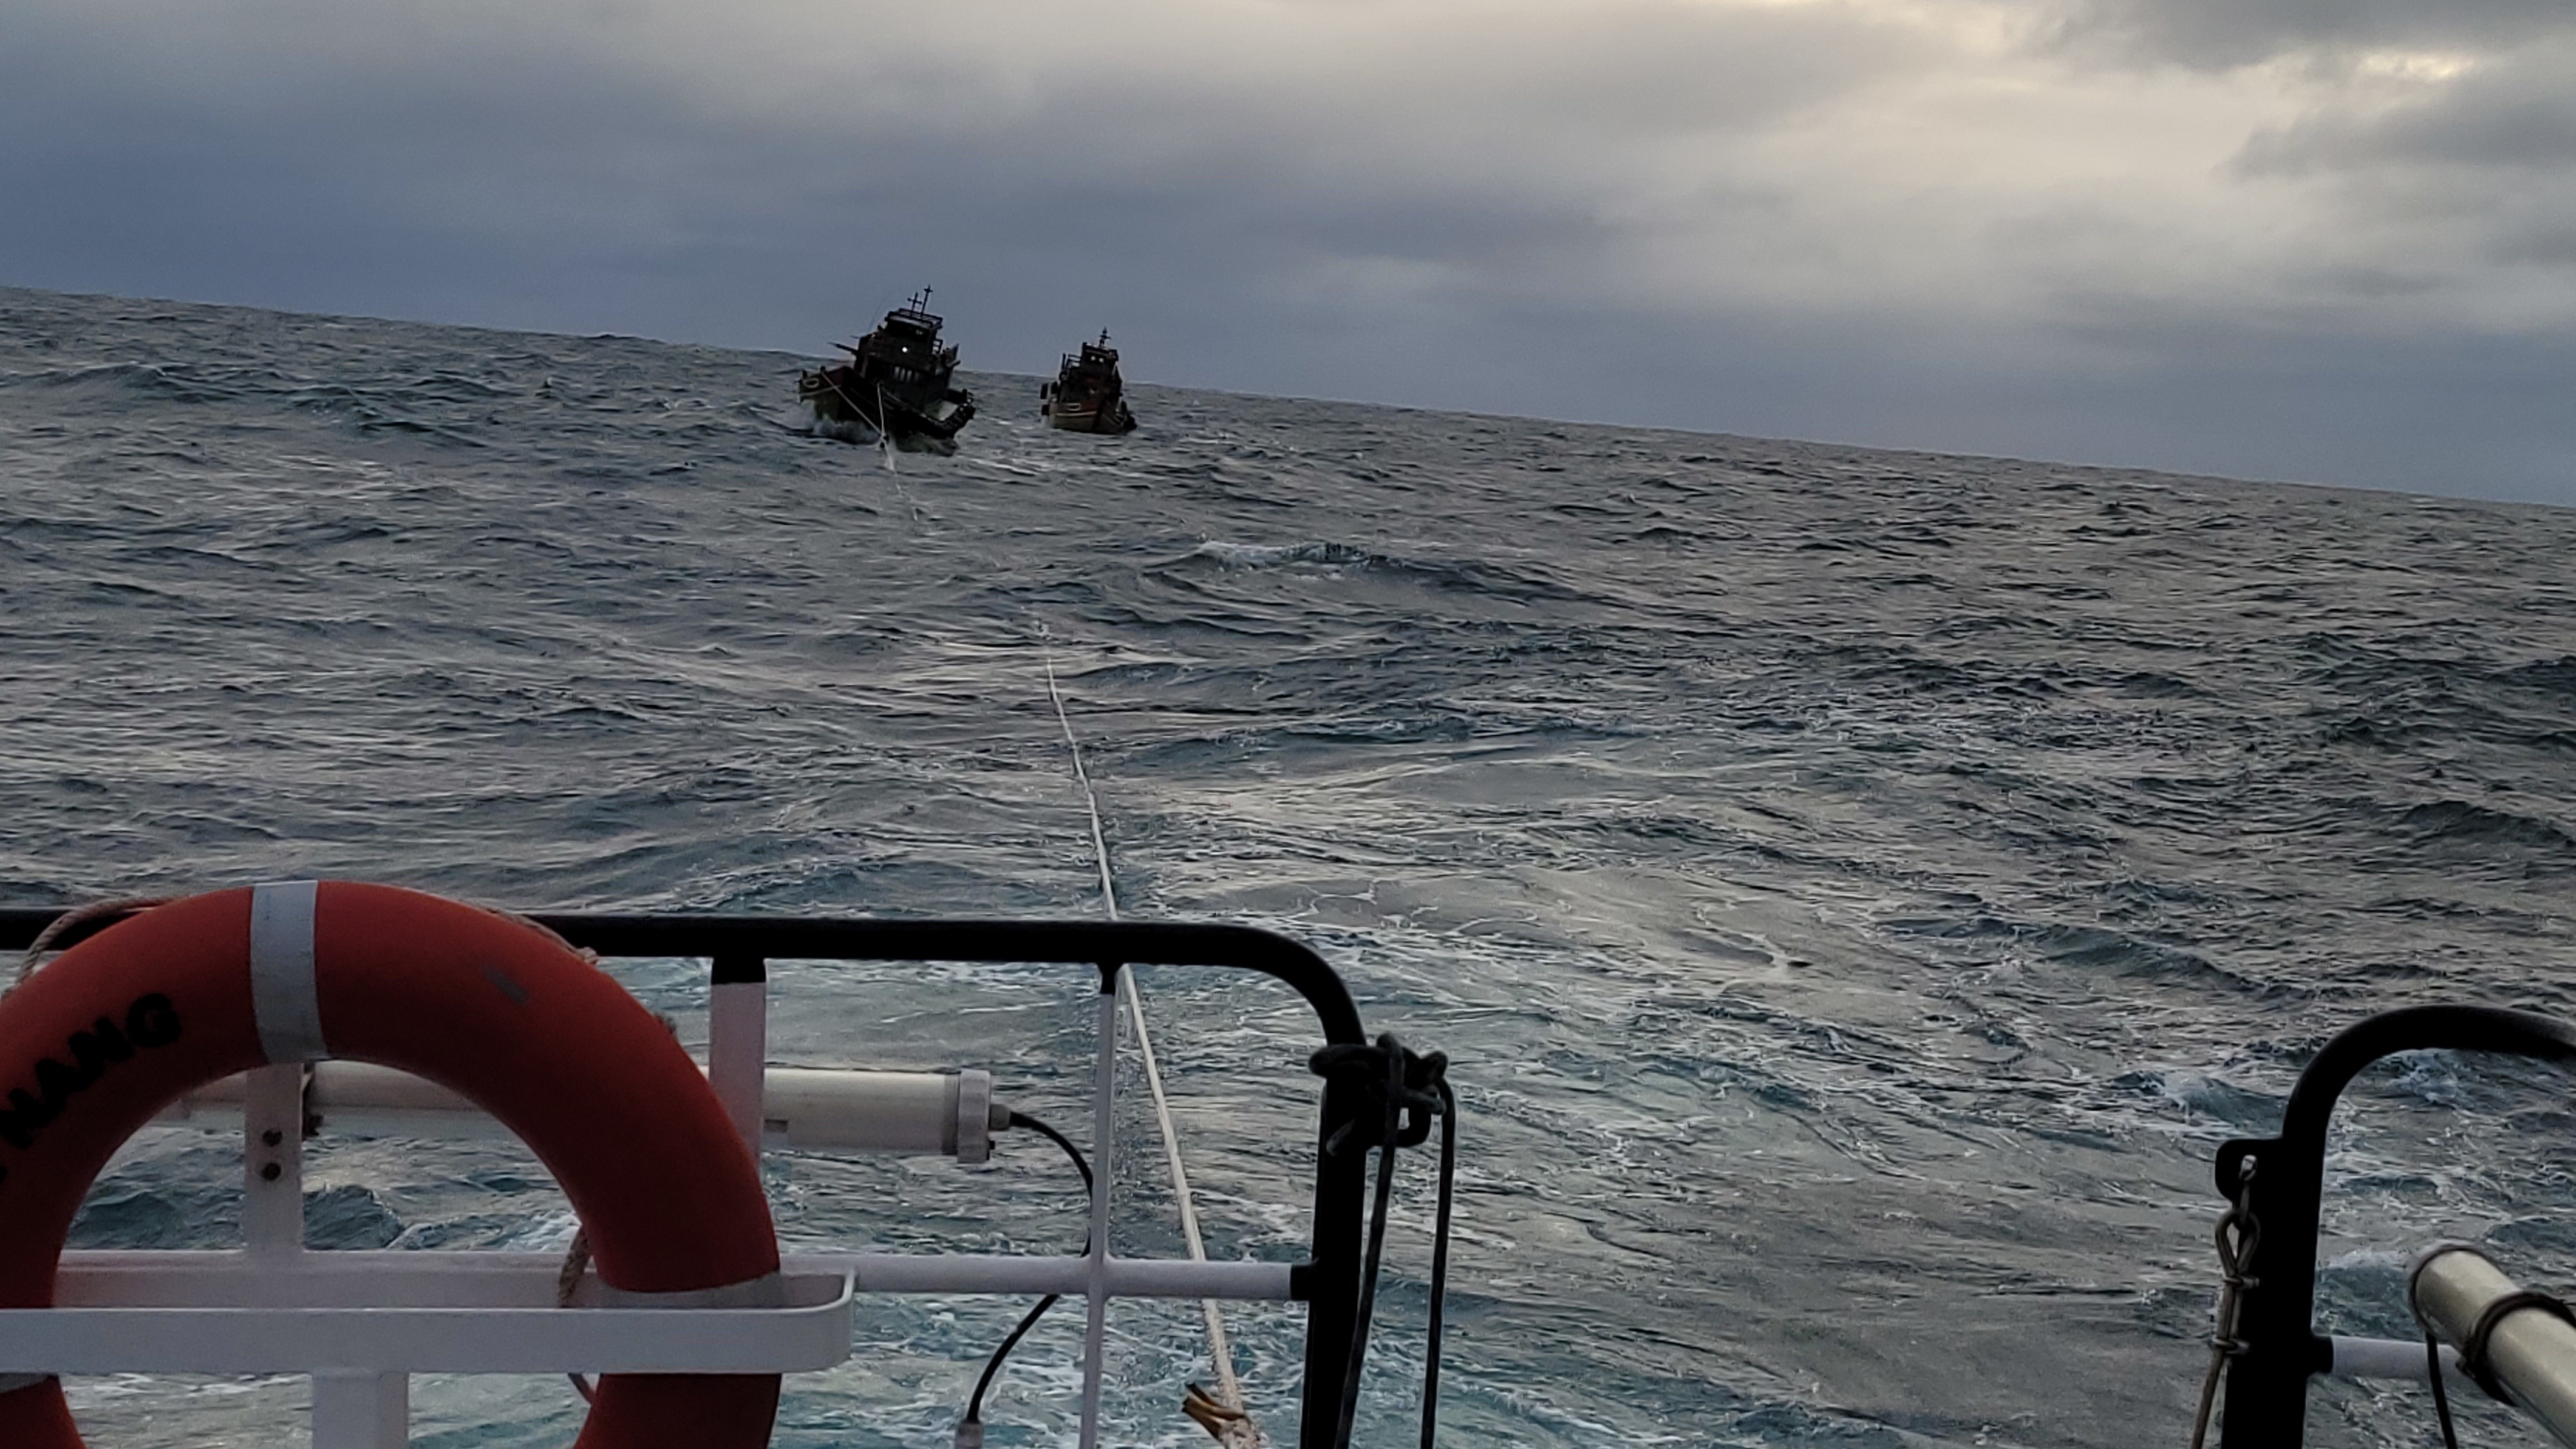 Vượt sóng lớn cứu 5 ngư dân cùng 2 tàu cá sắp chìm trên biển